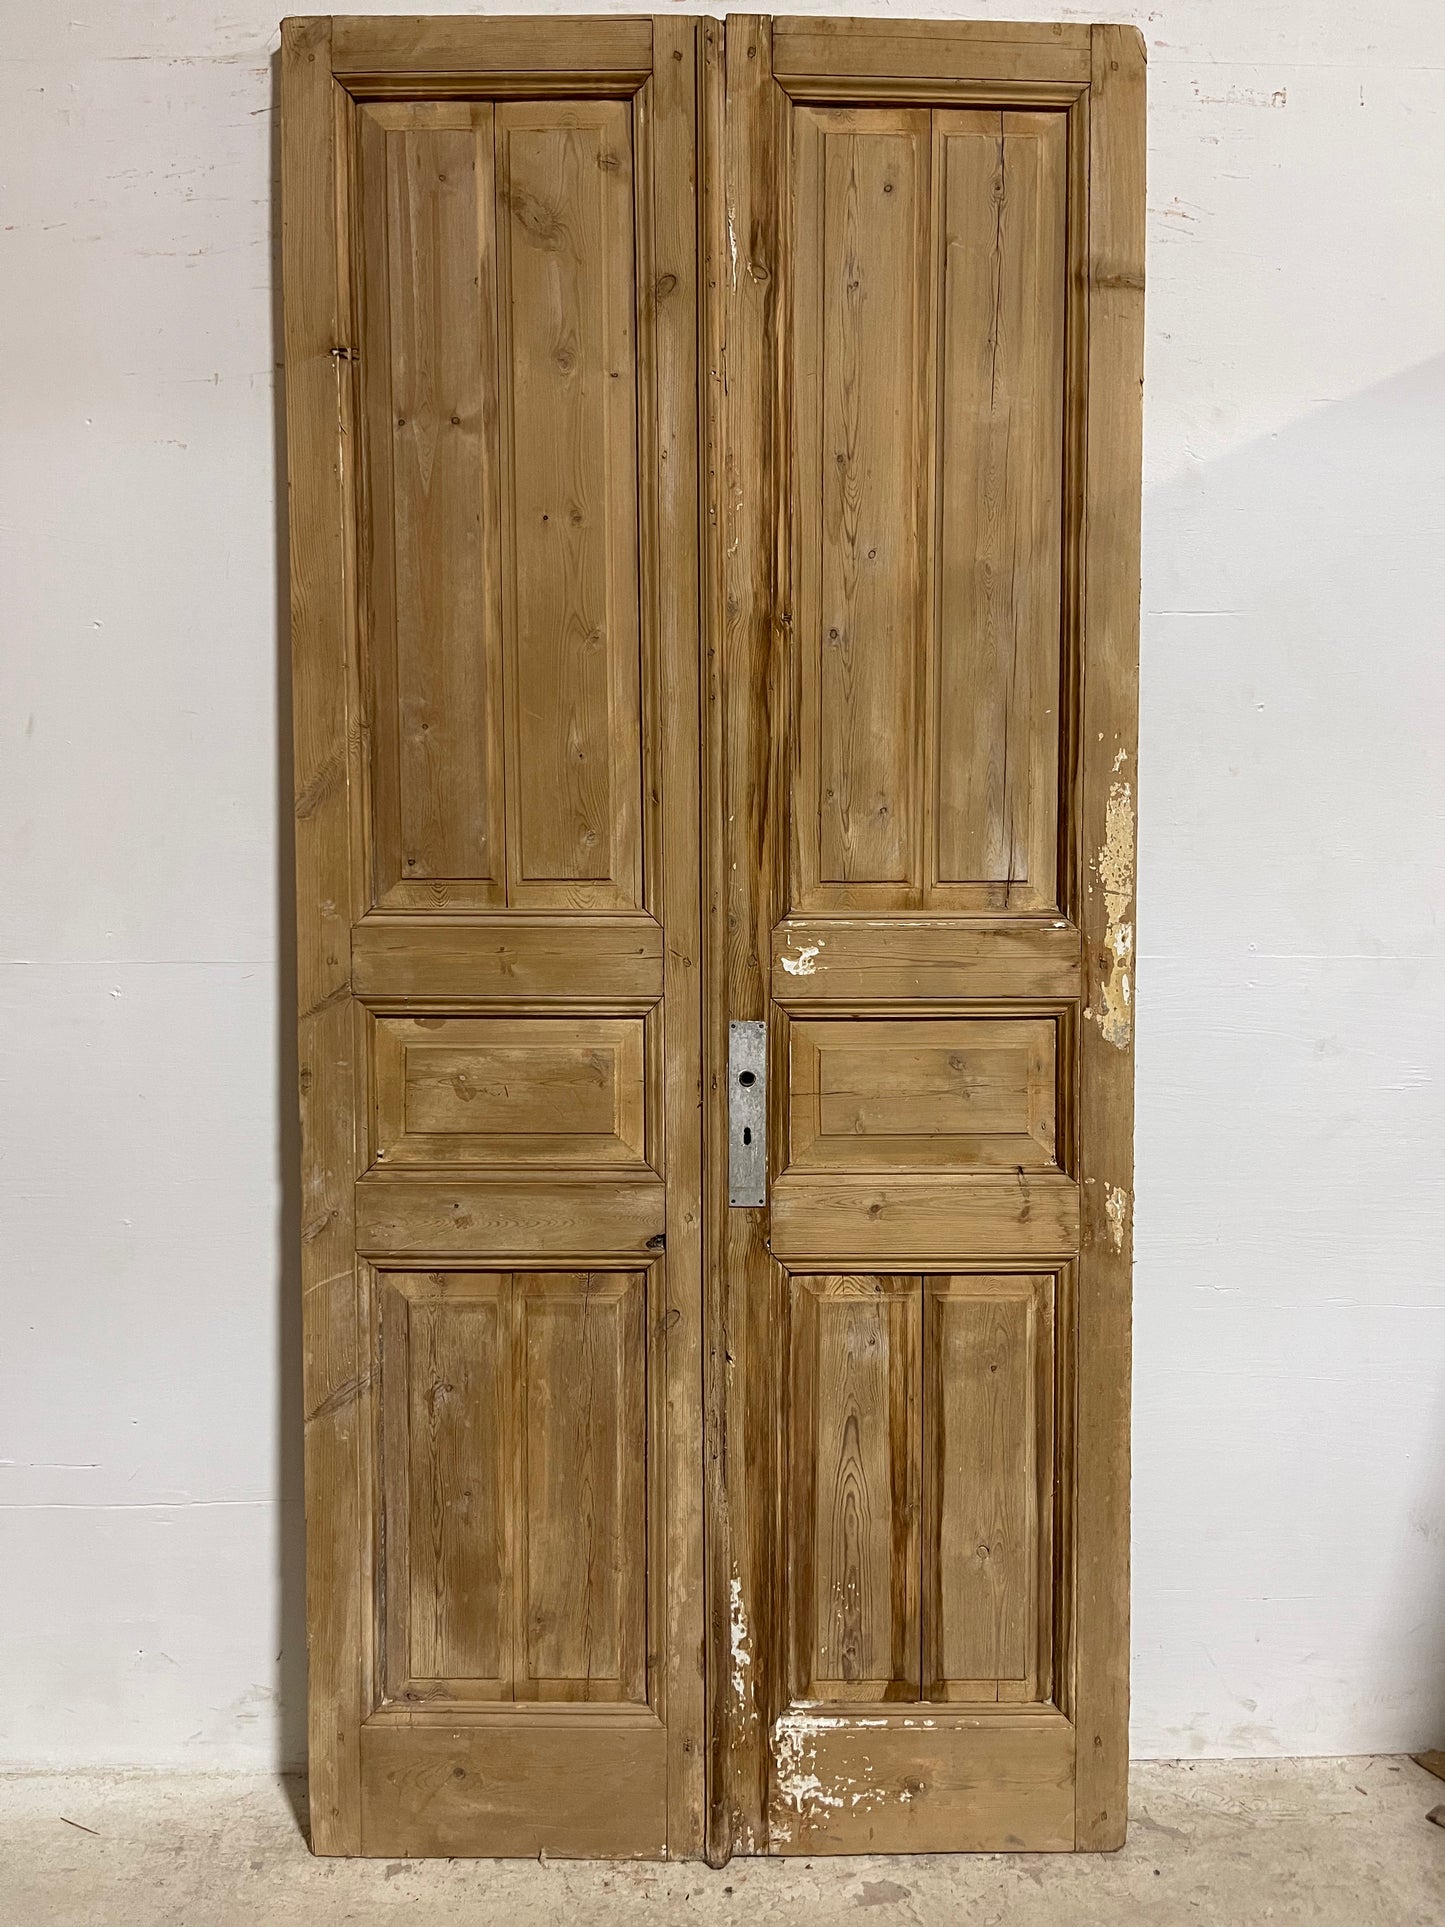 Antique French panel Doors (96.75x44.75) J622